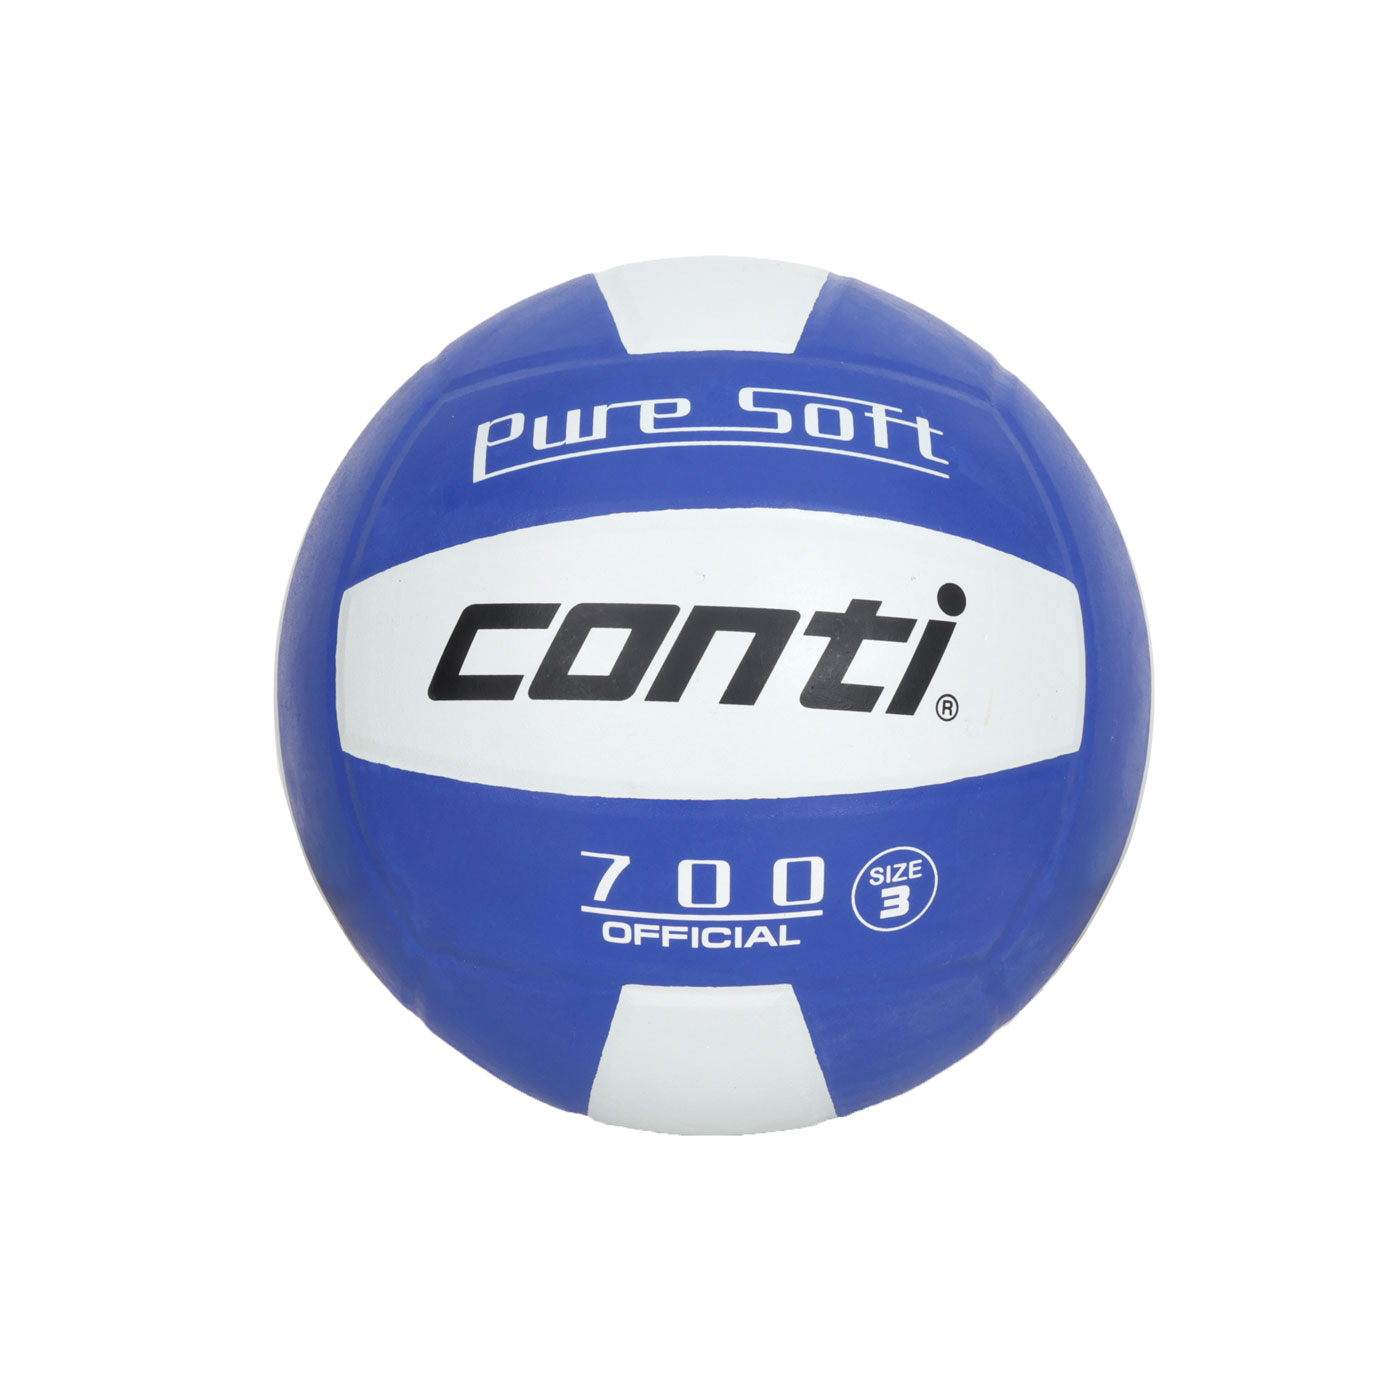 詠冠conti 3號超軟橡膠排球-雙色系列 CONTI V700-3-WB